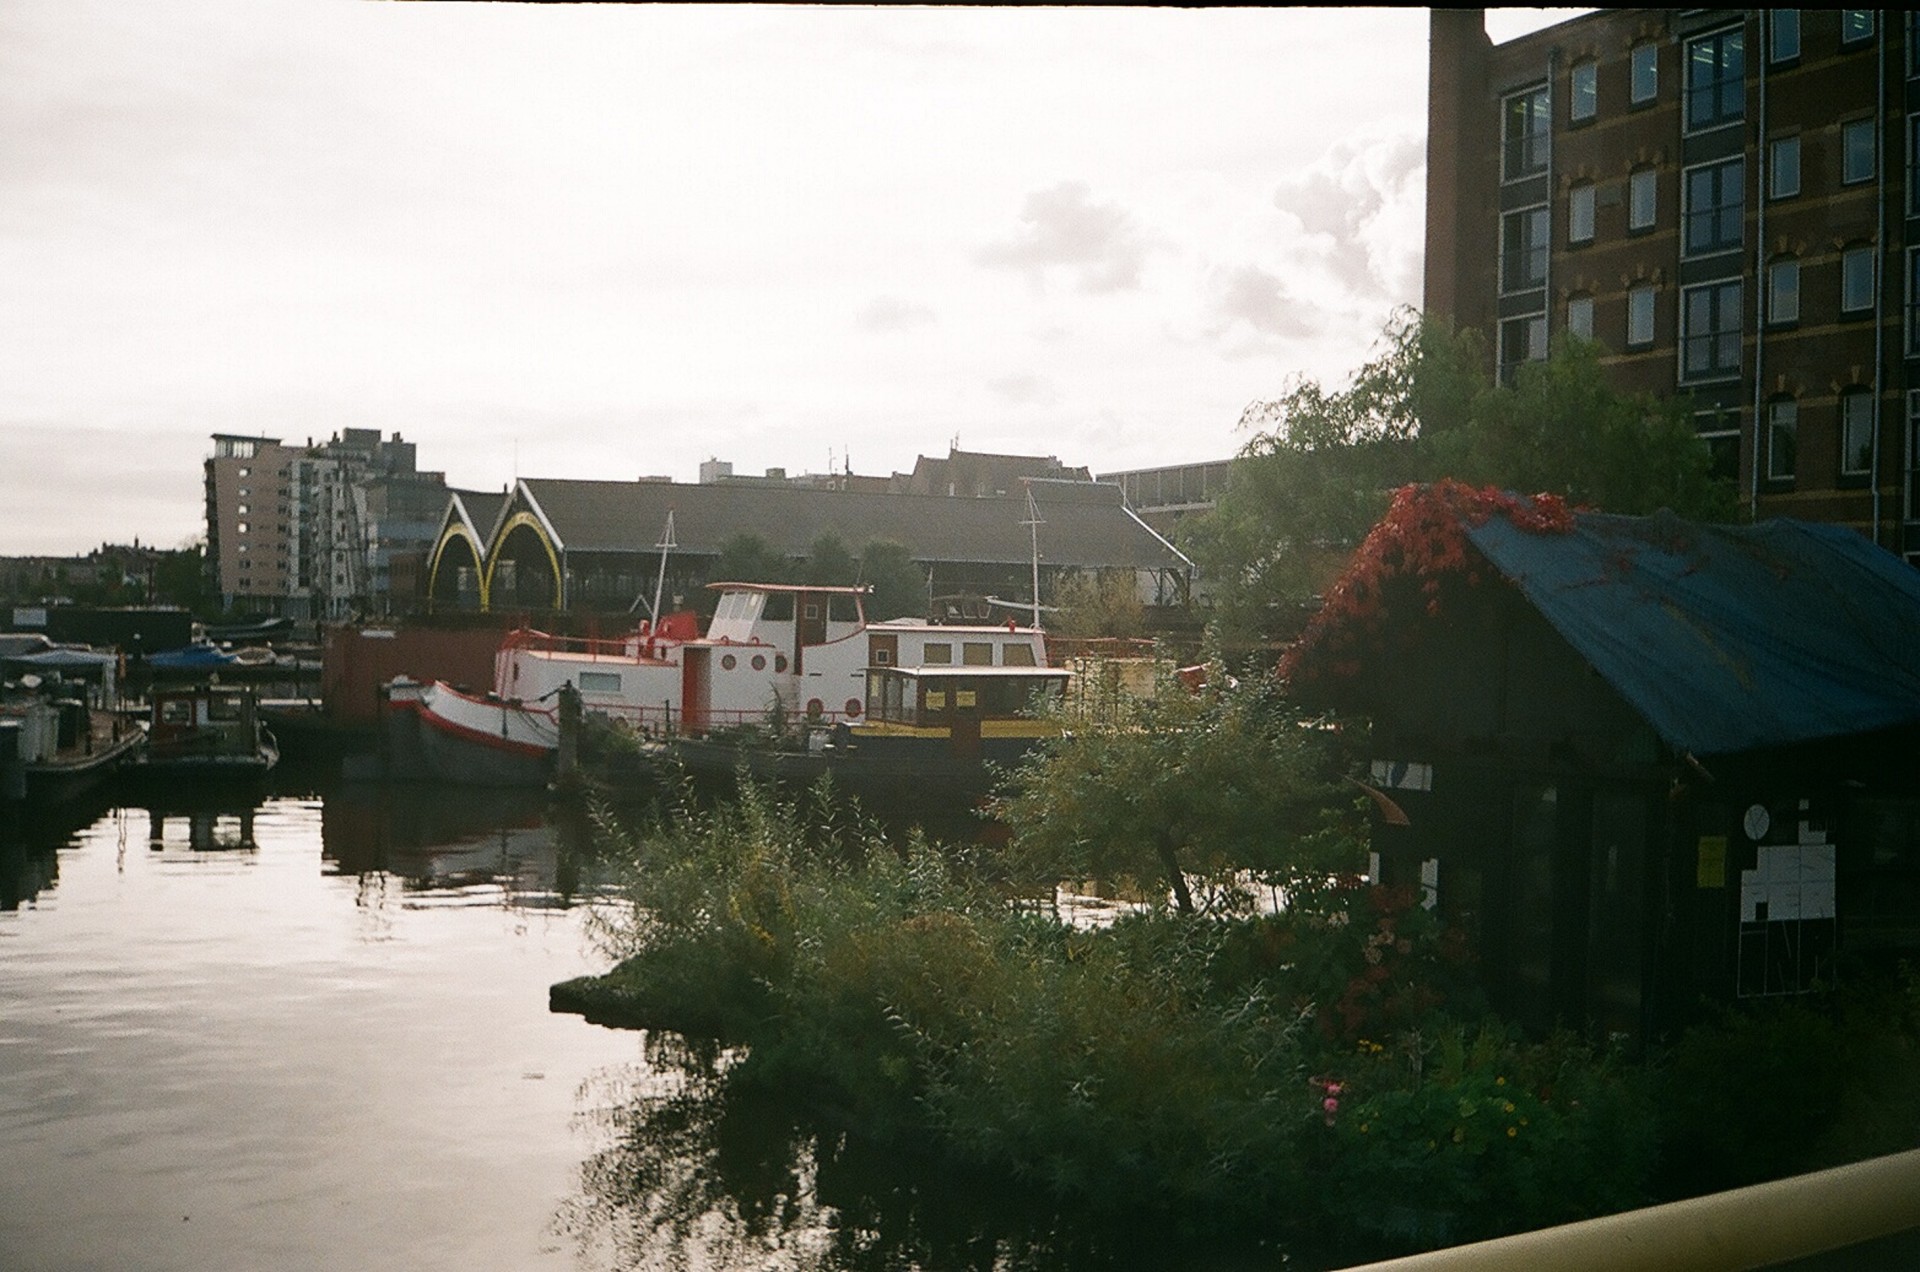 barge amsterdam netherlands free photo